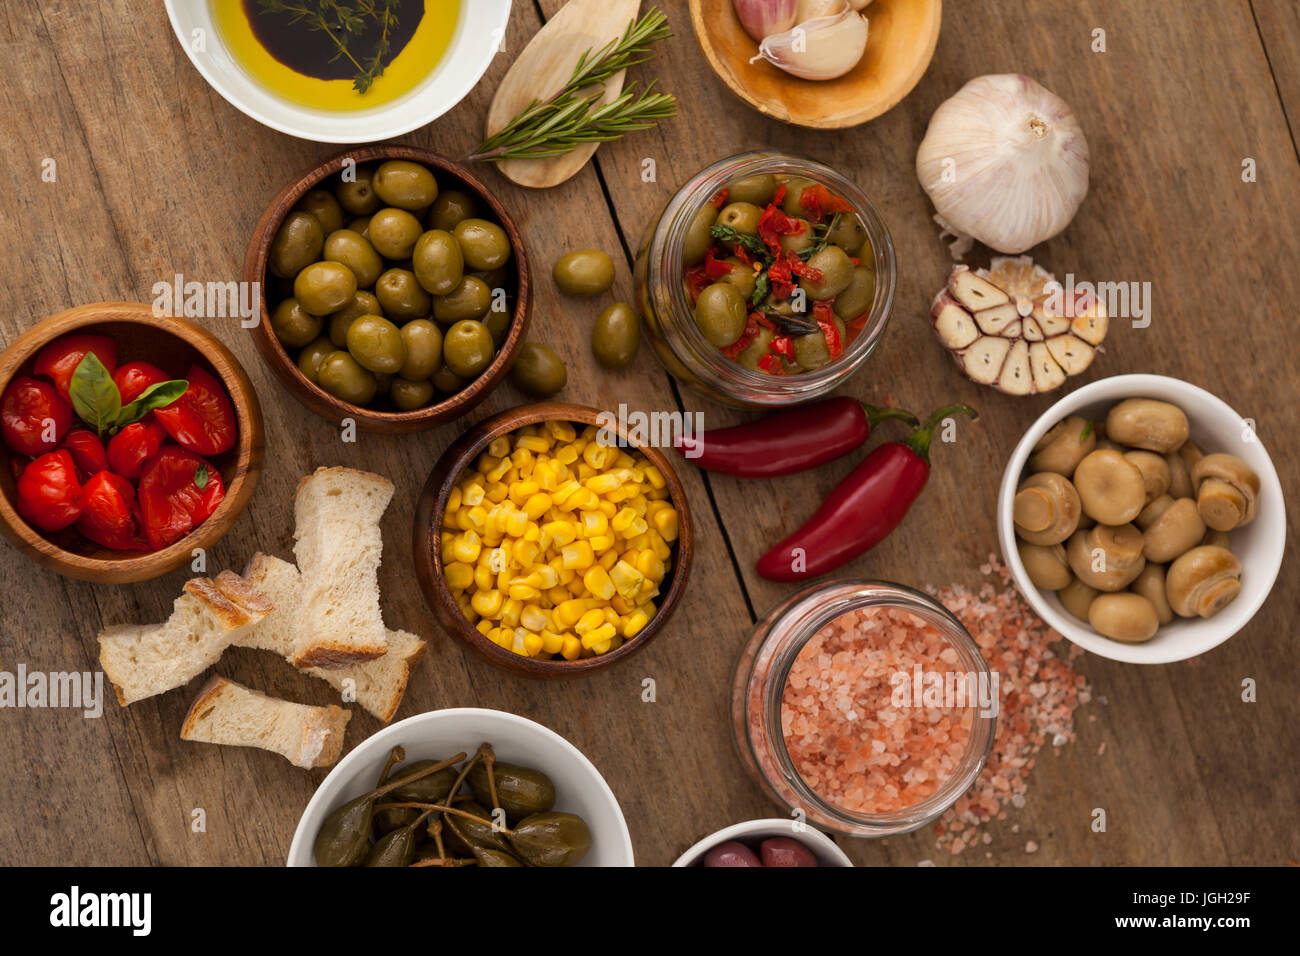 Vista aerea di olive con verdura e spezie da olio nella ciotola sul tavolo Foto Stock